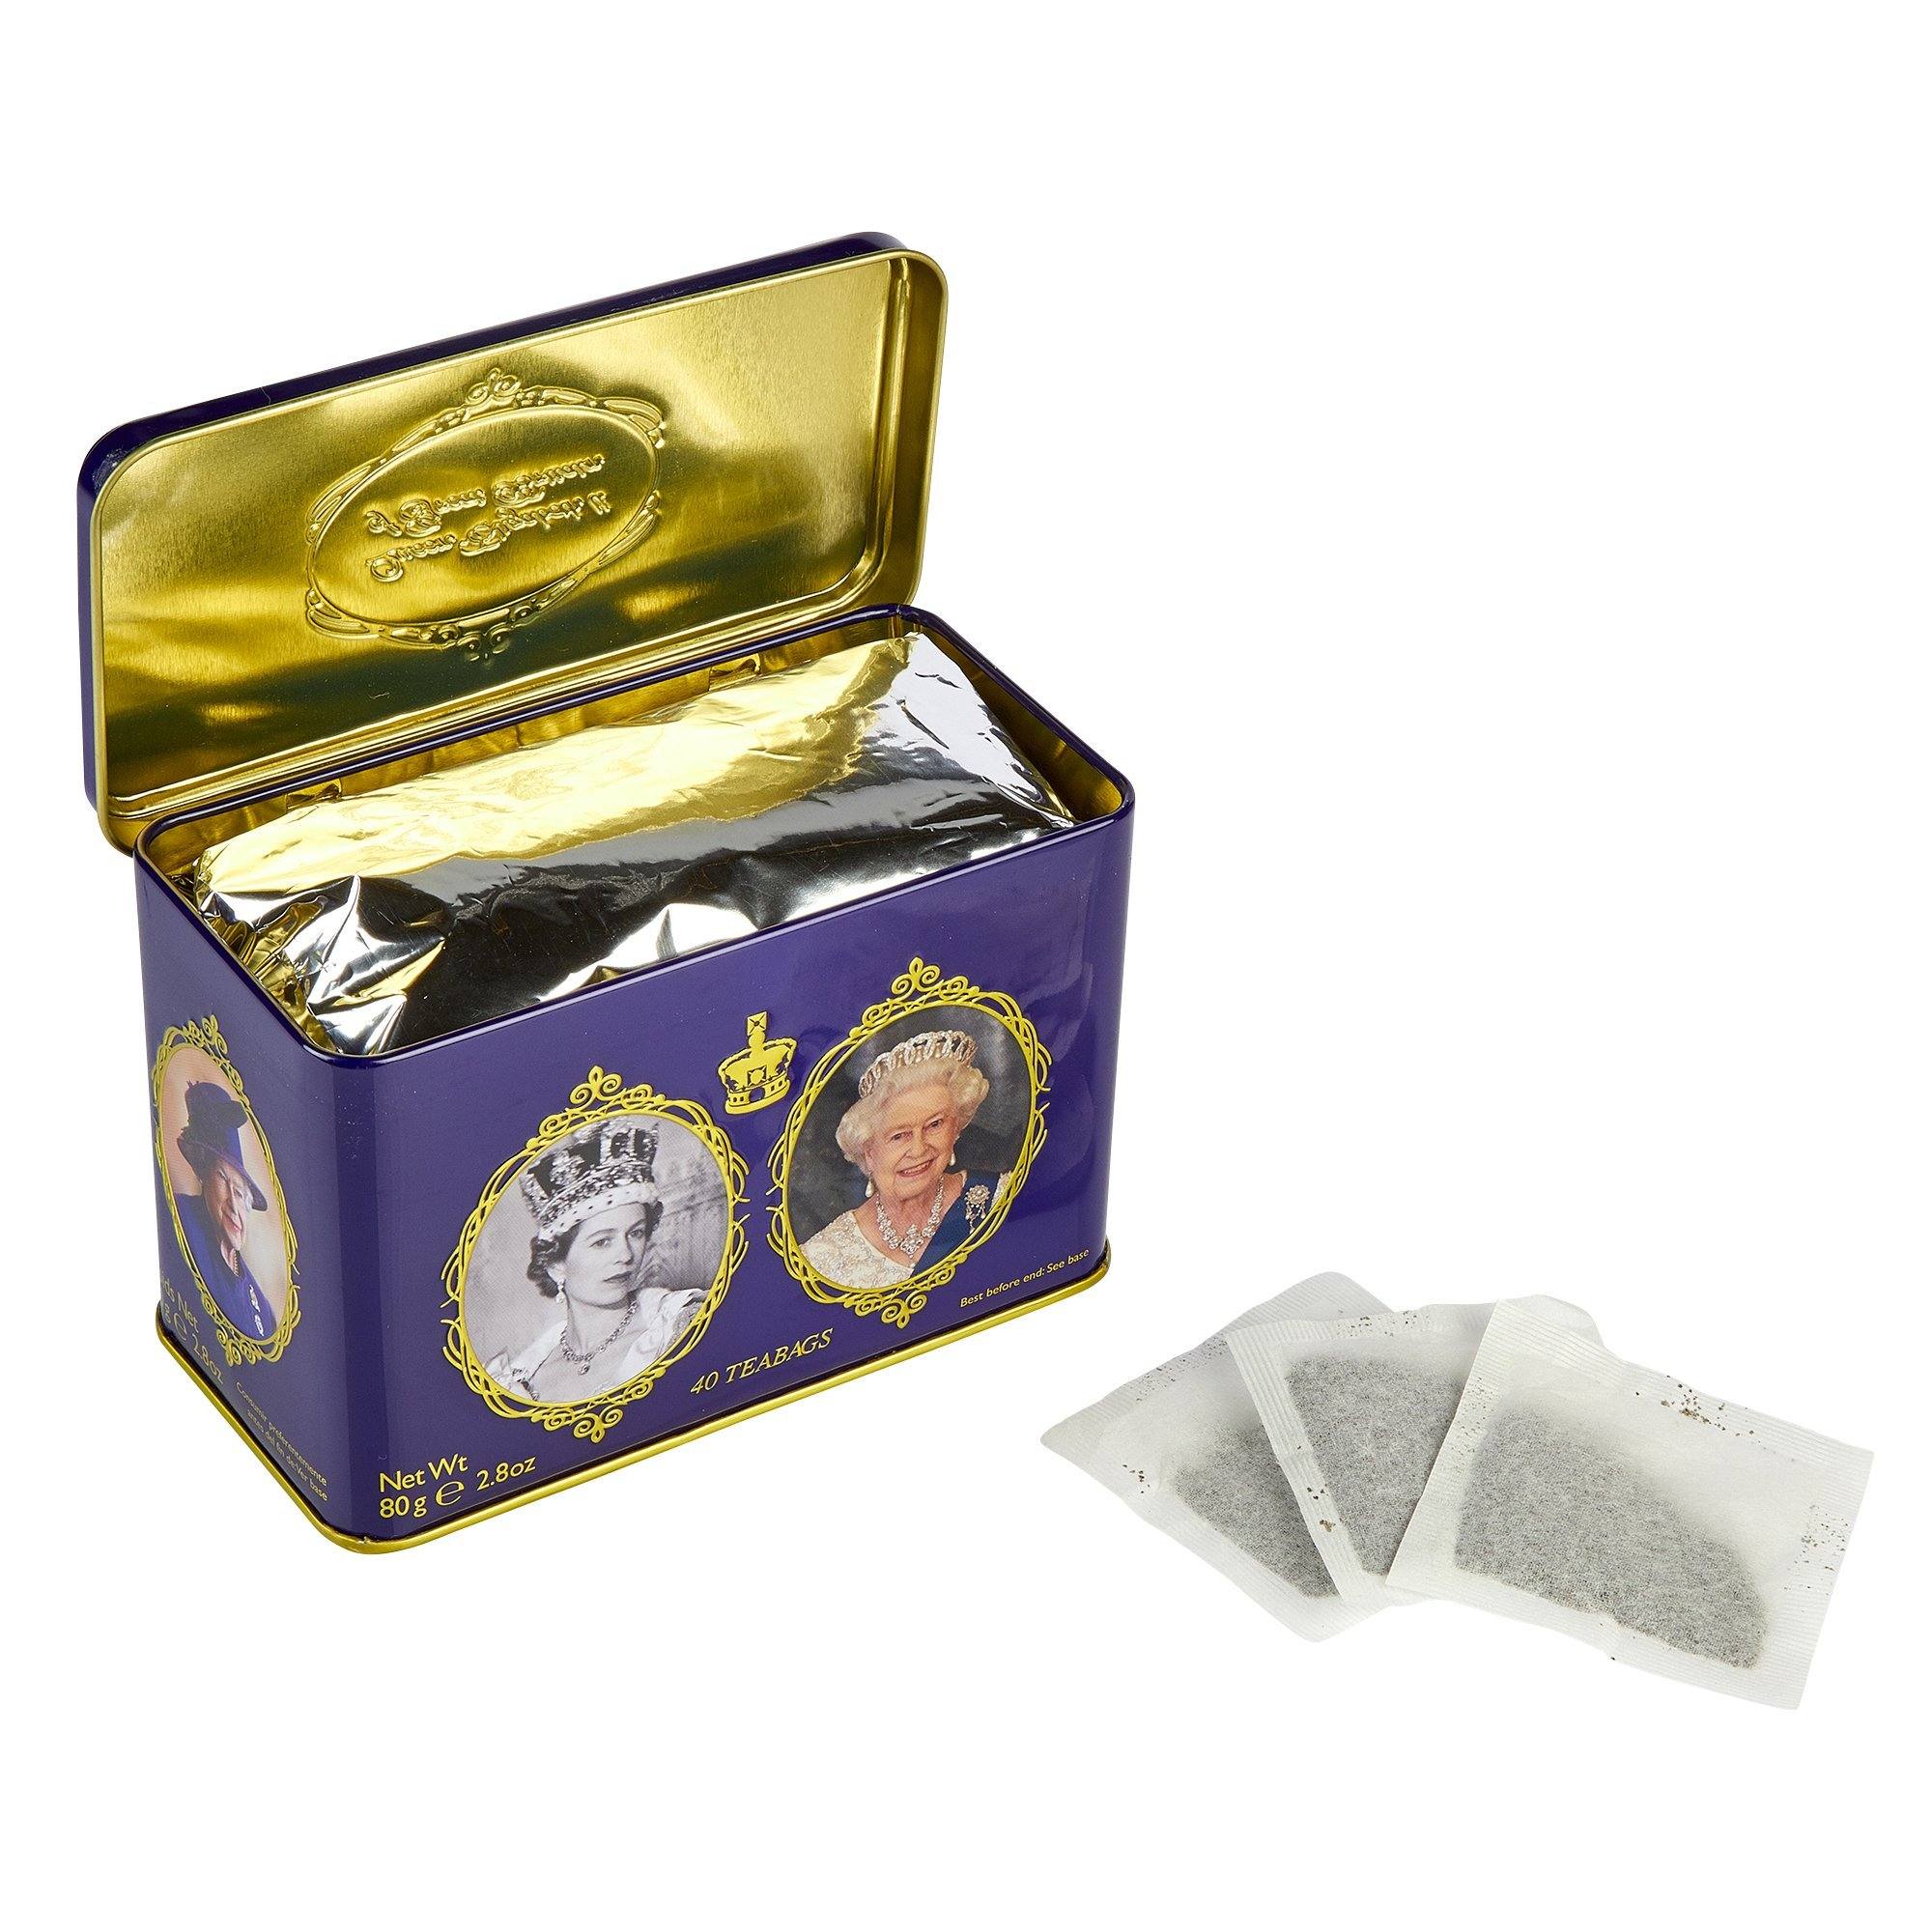 Queen Elizabeth II English Breakfast Tea Tin 40 Teabags Black Tea New English Teas 